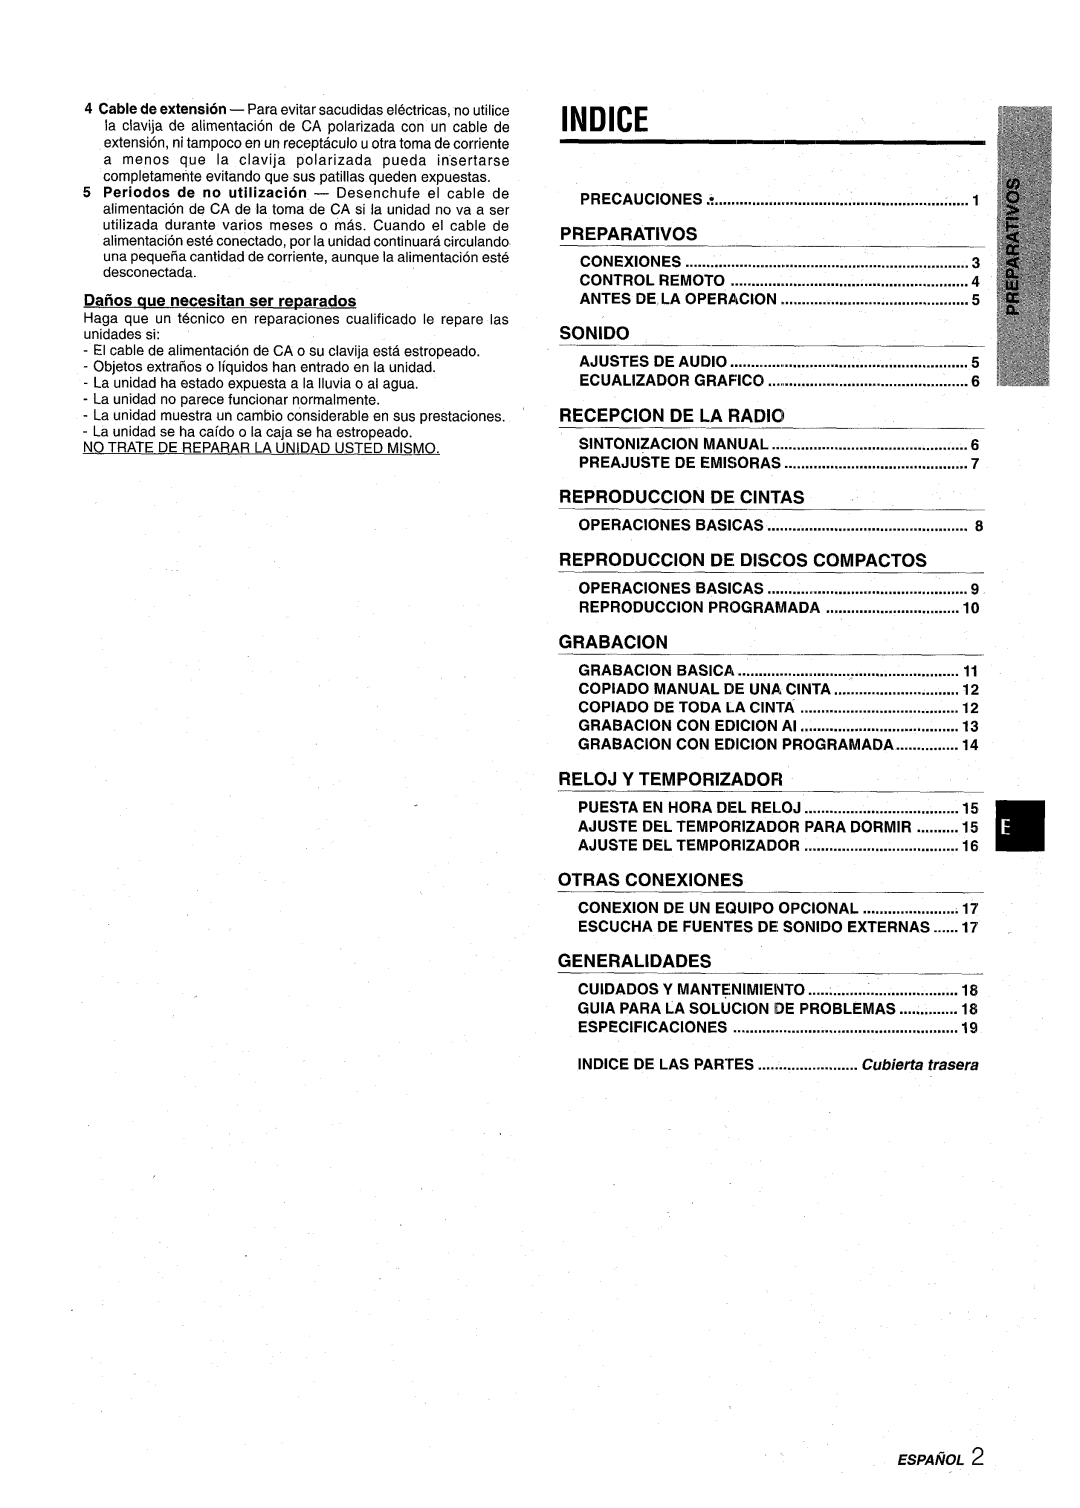 Aiwa CX-NA22 manual Indice, Preparatives, Sonido, Recepcion, De La Radio, Reproduction, De Cintas, De Discos, Compactos 